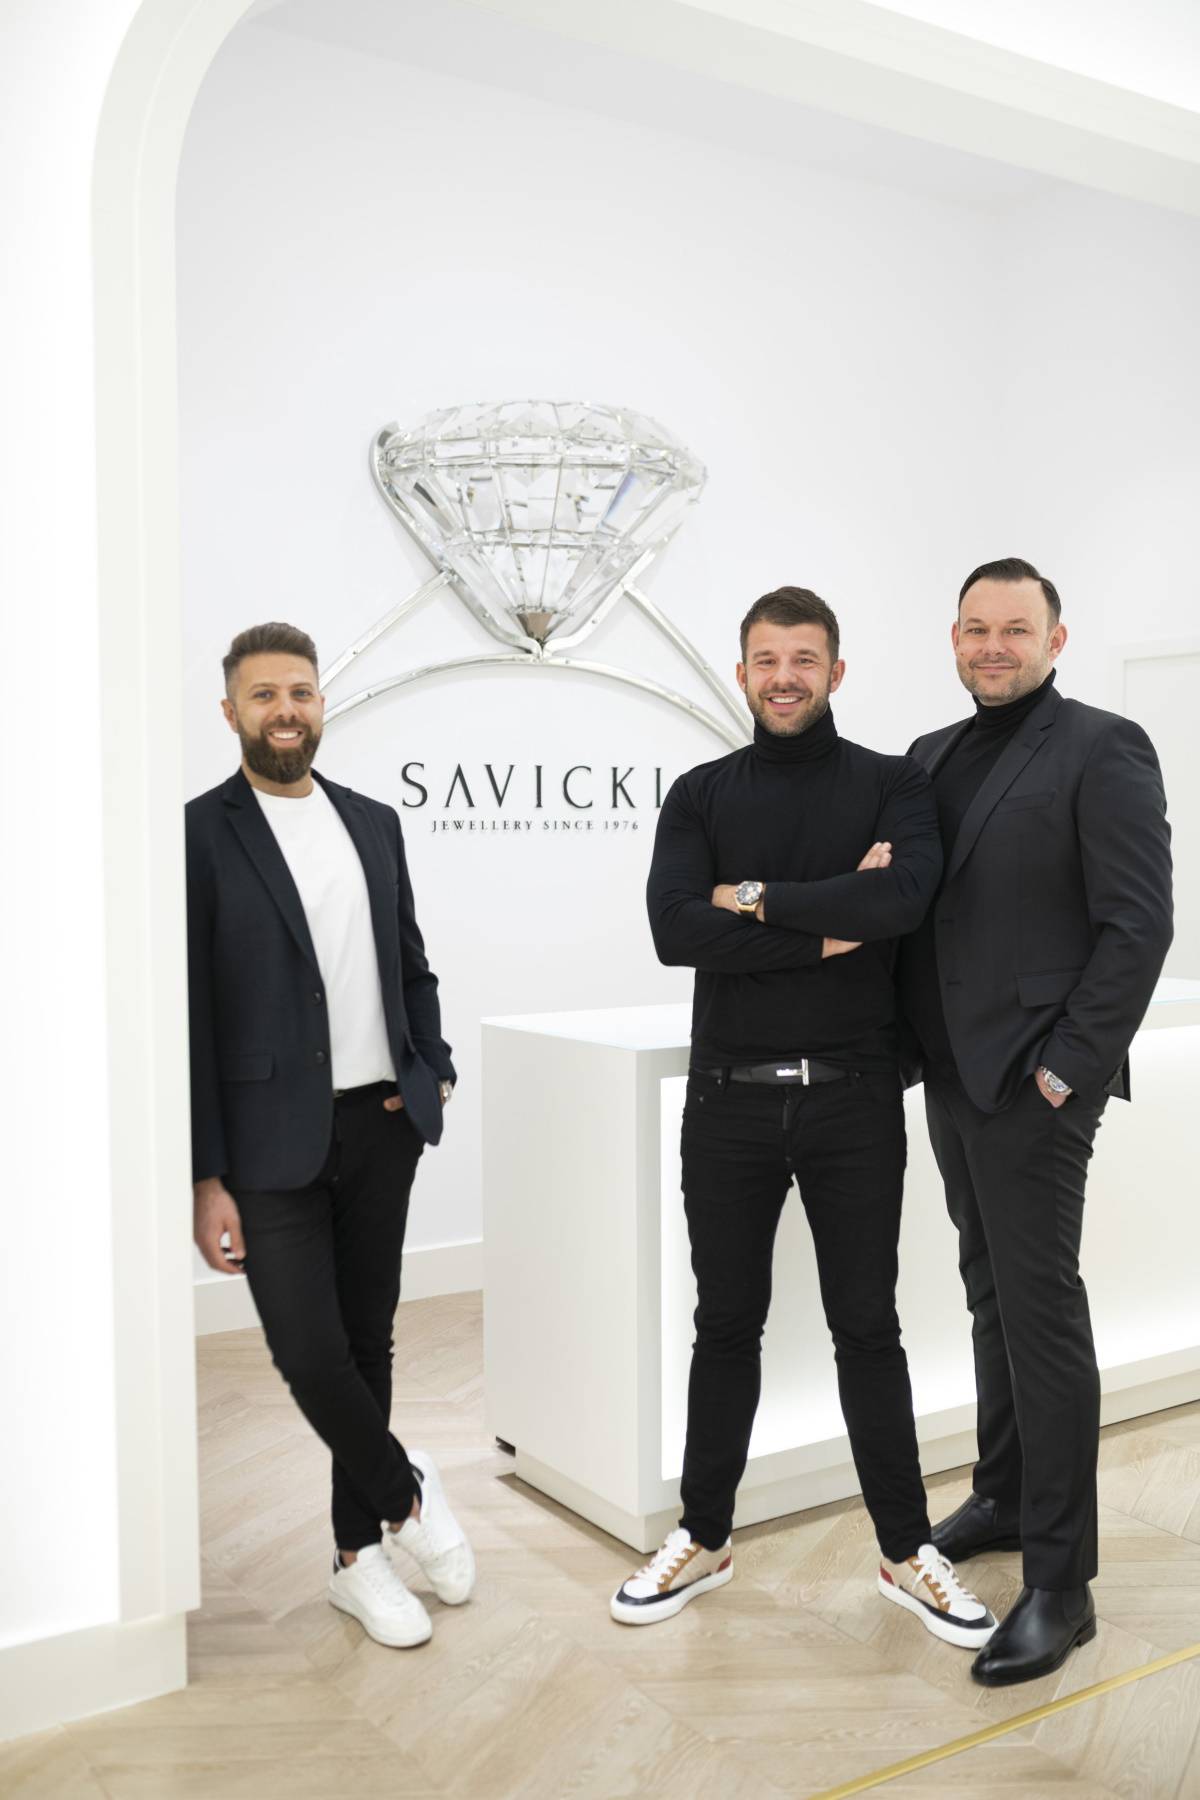 Historia wyjątkowej polskiej marki jubilerskiej Savicki. Rodzina Sawickich, która tworzy markę biżuterii Savicki, kieruje się filozofią Share Your Love, i w życiu, i w biznesie.